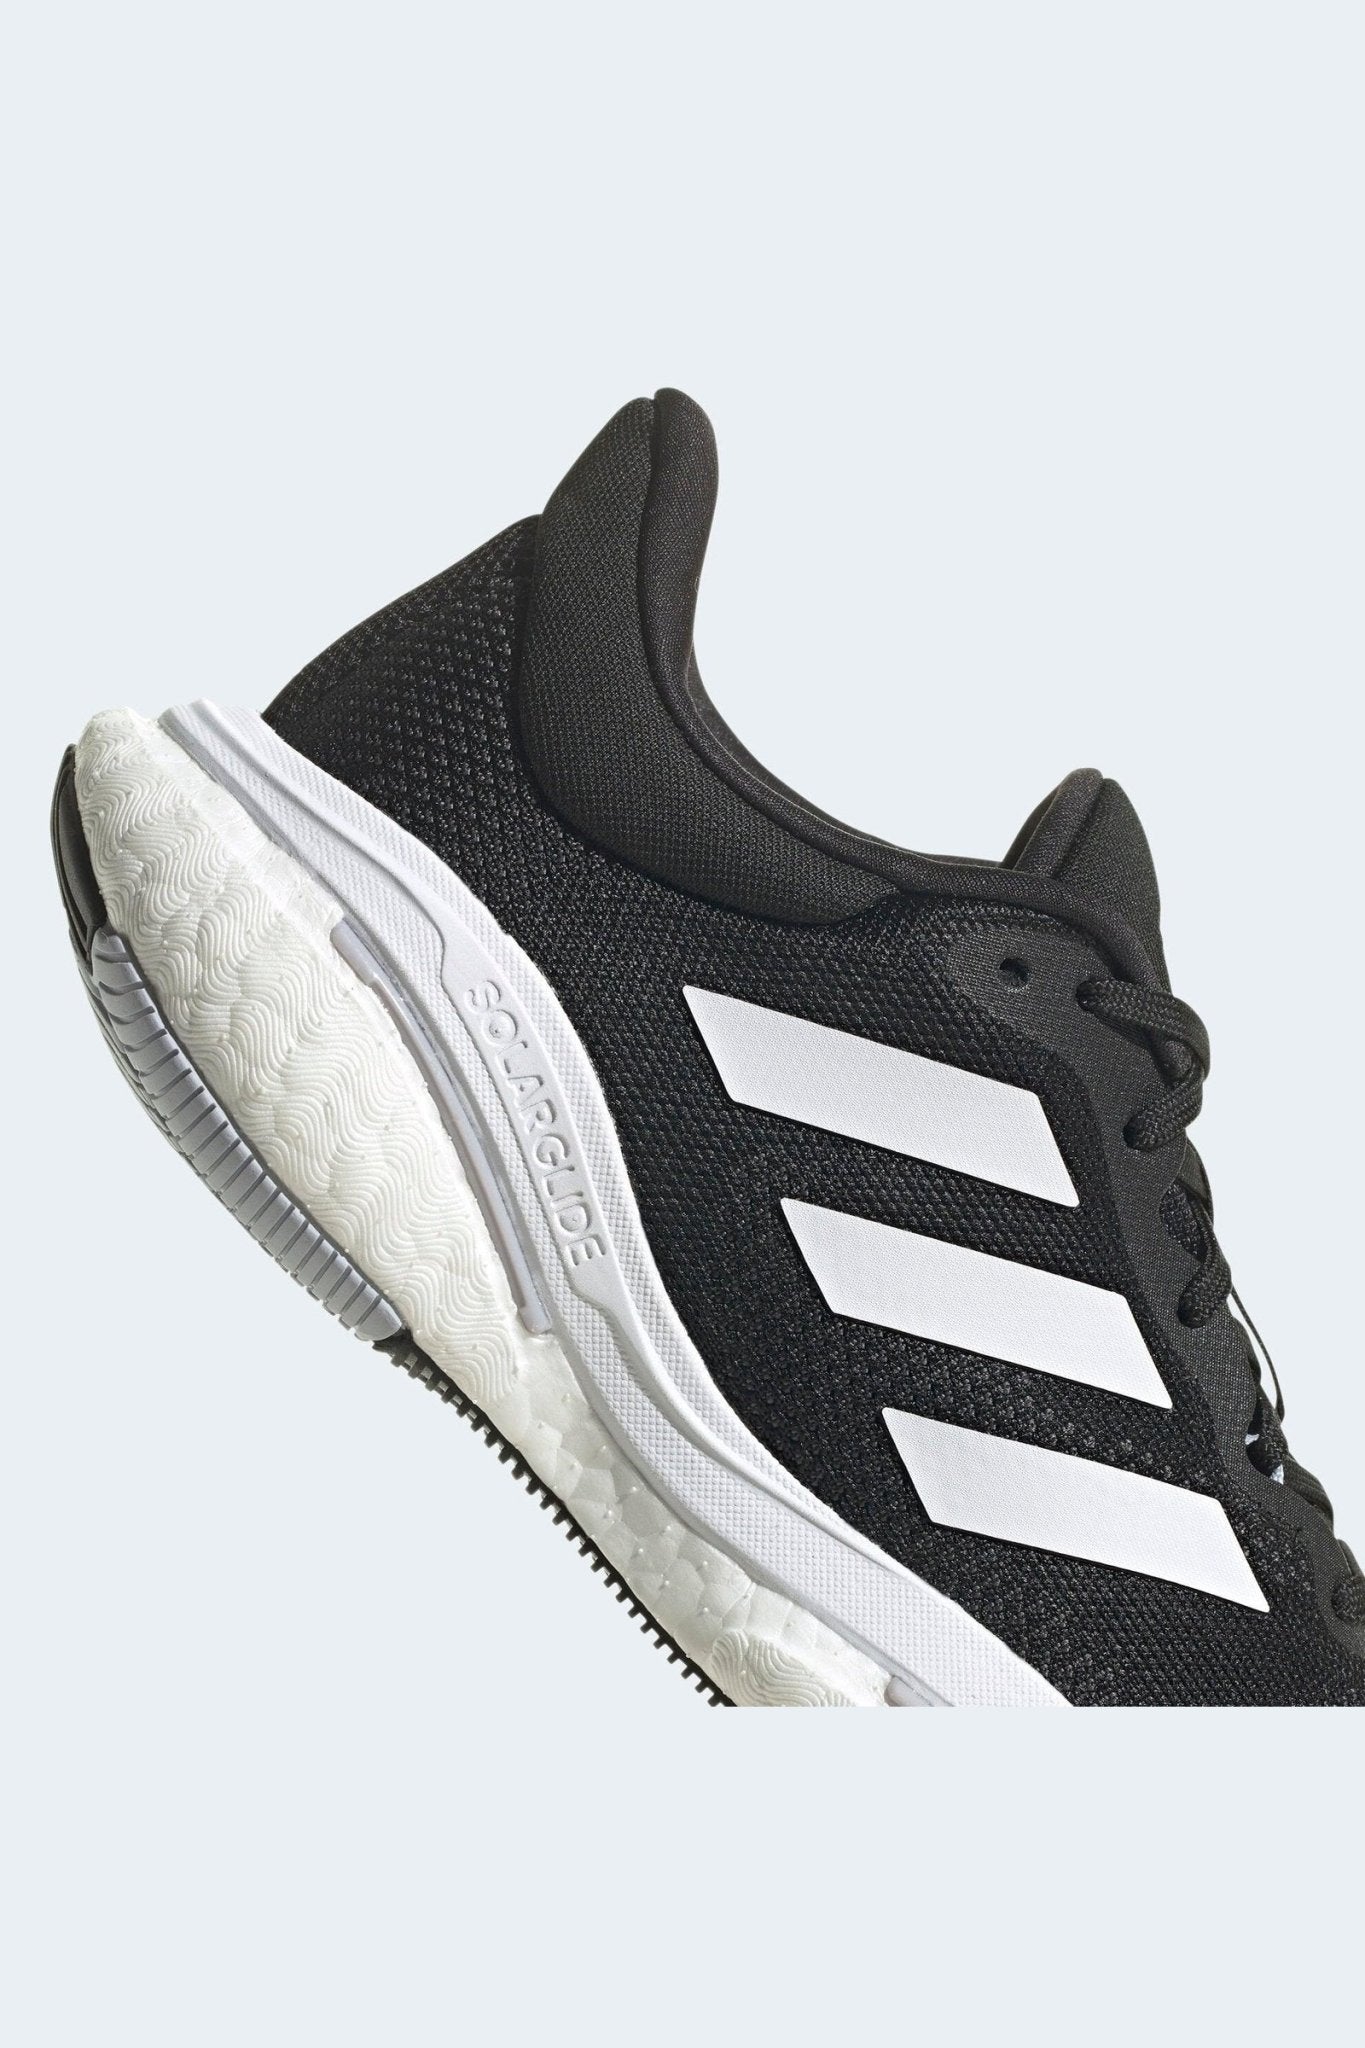 ADIDAS - נעלי ספורט לנשים SOLAR GLIDE 5 בצבע שחור - MASHBIR//365